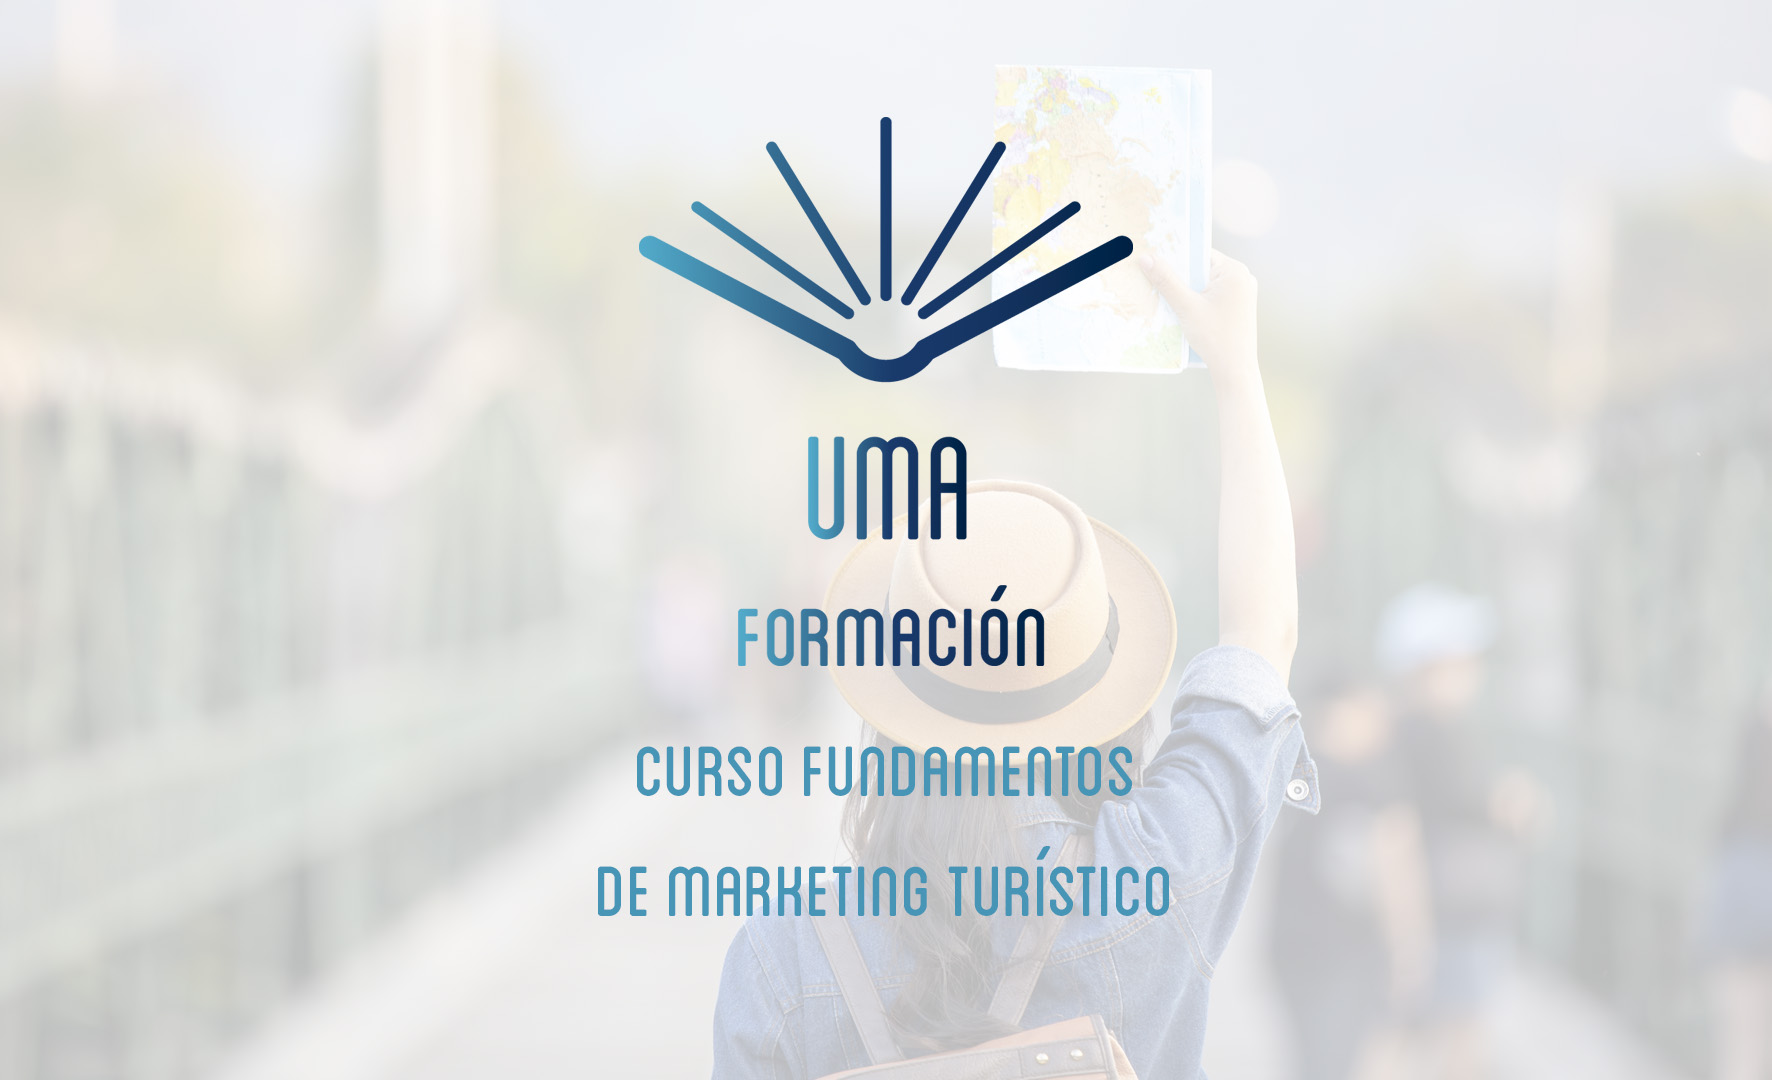 Curso Fundamentos de marketing turístico | UMA formación, elearning, patrimonio cultural